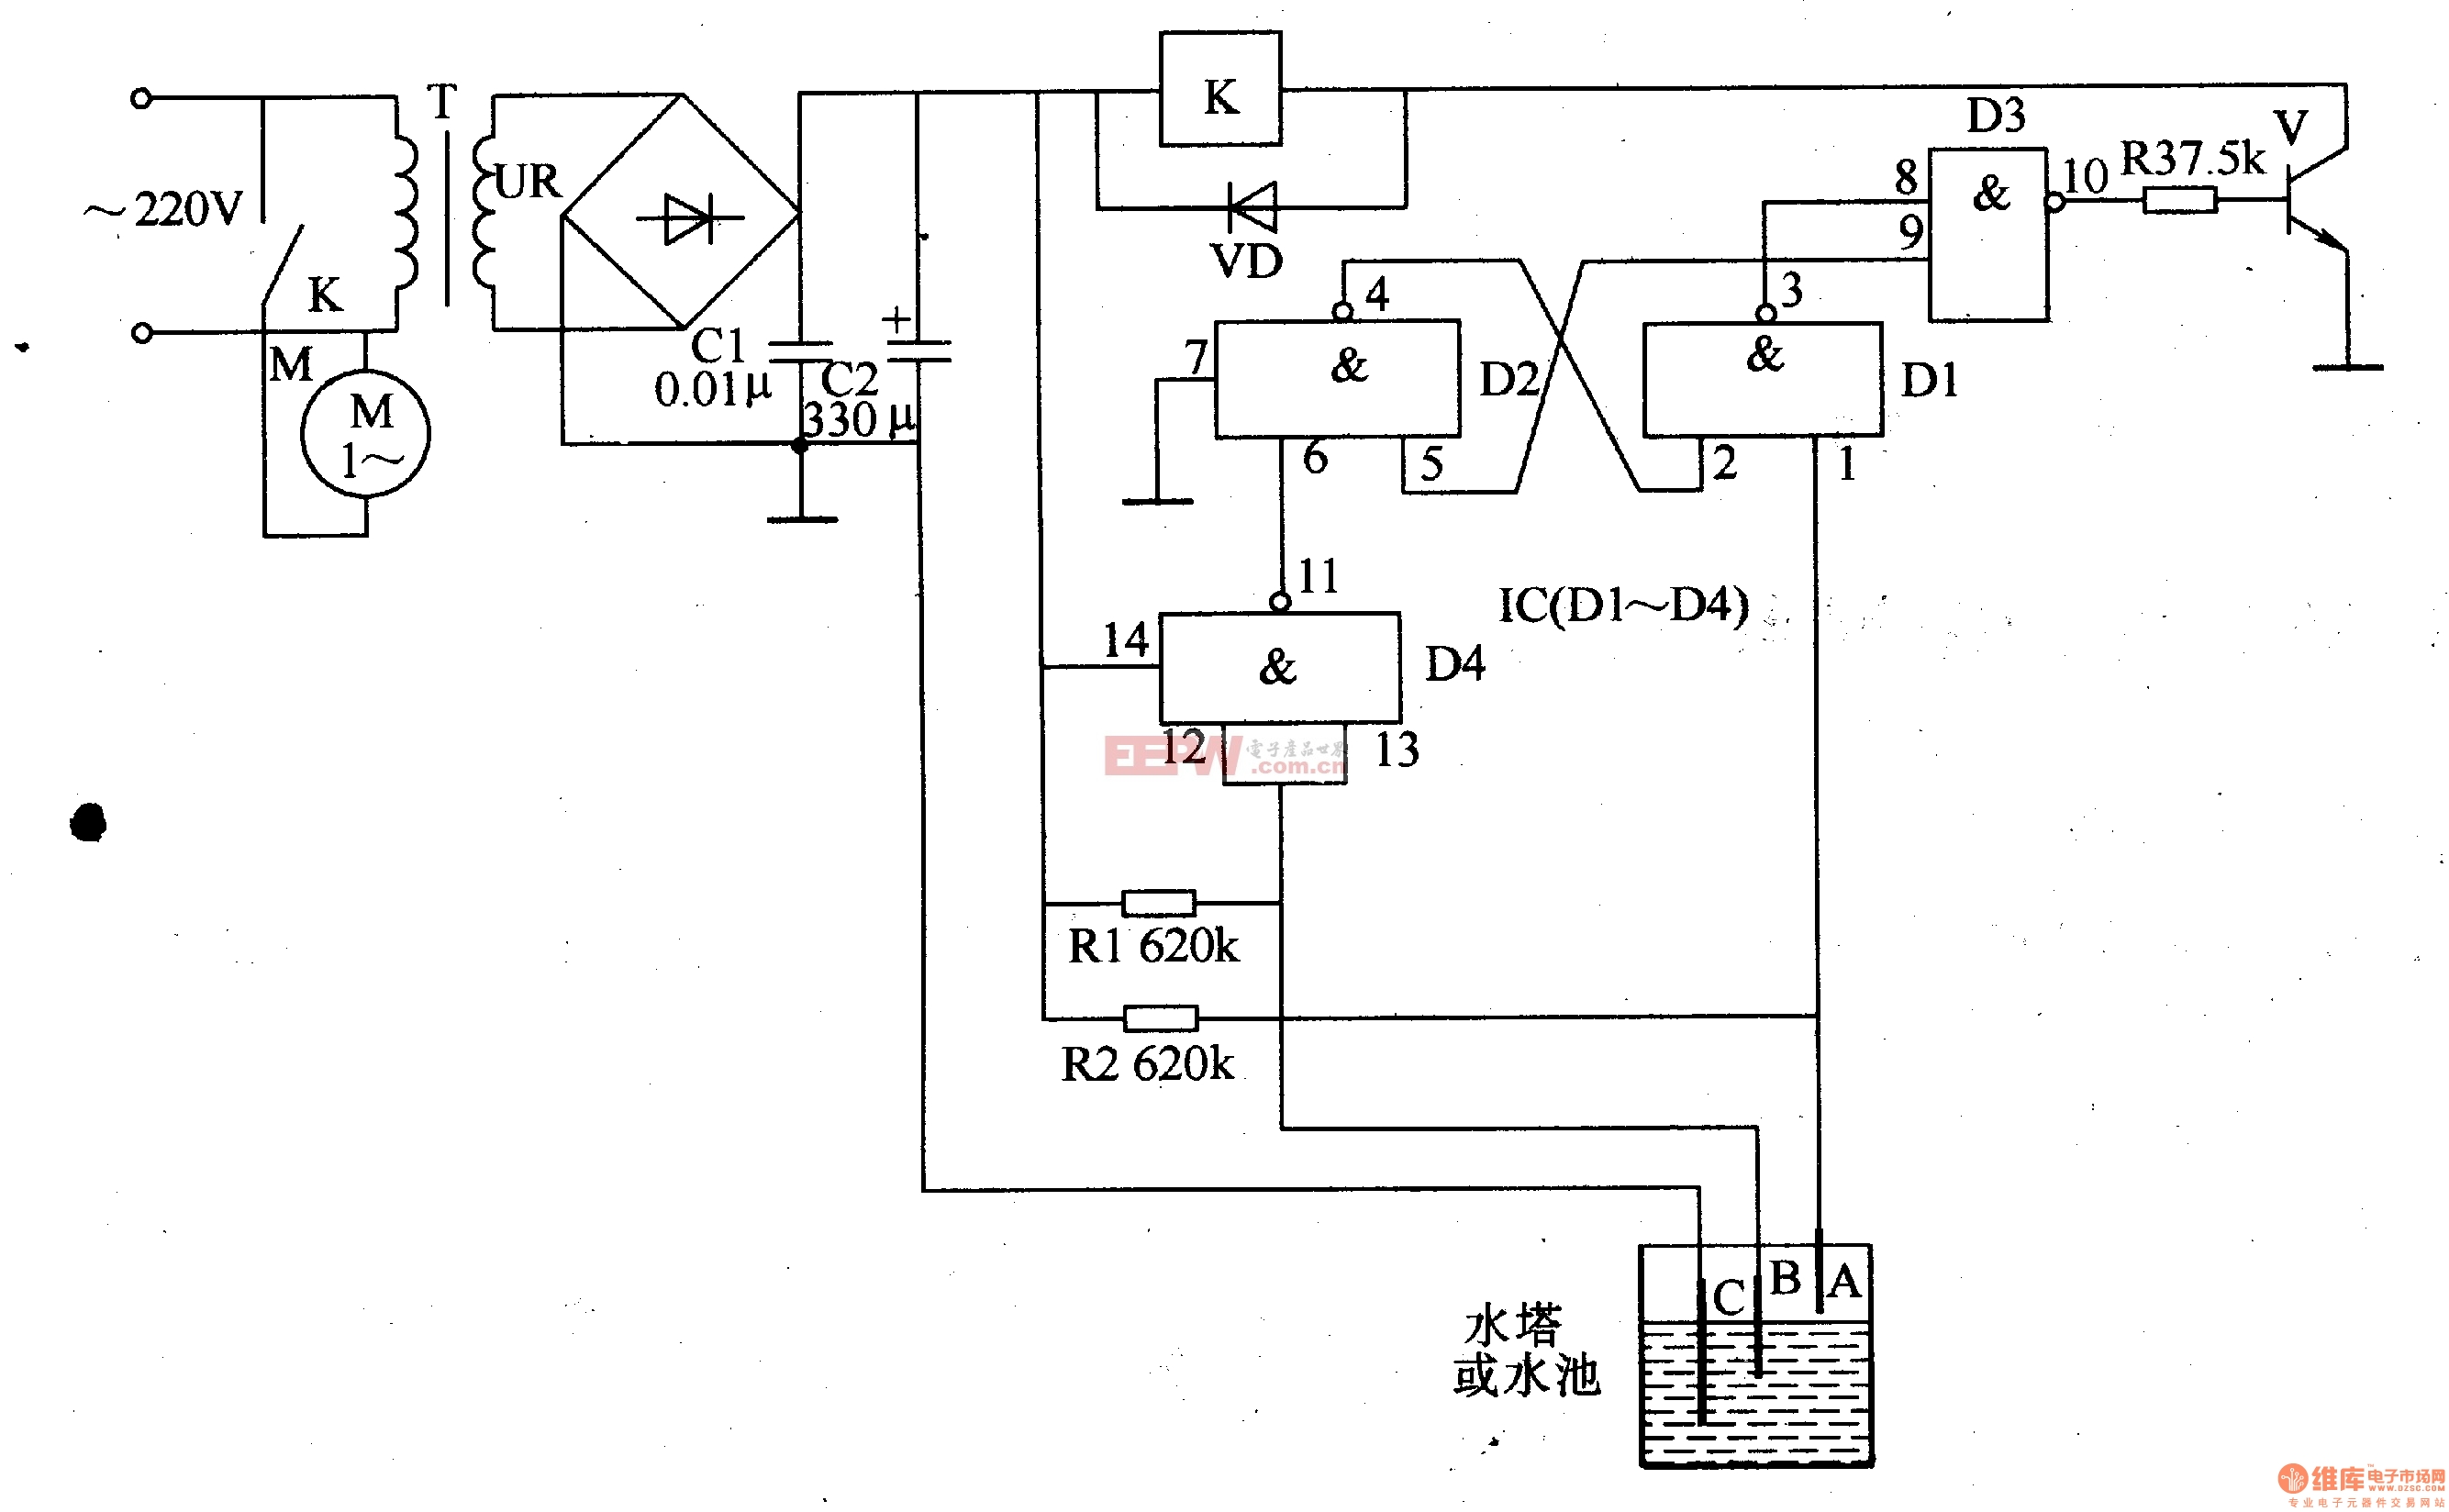 电路工作原理本例介绍的液位自动控制器,电路简单易制,无需调试,可